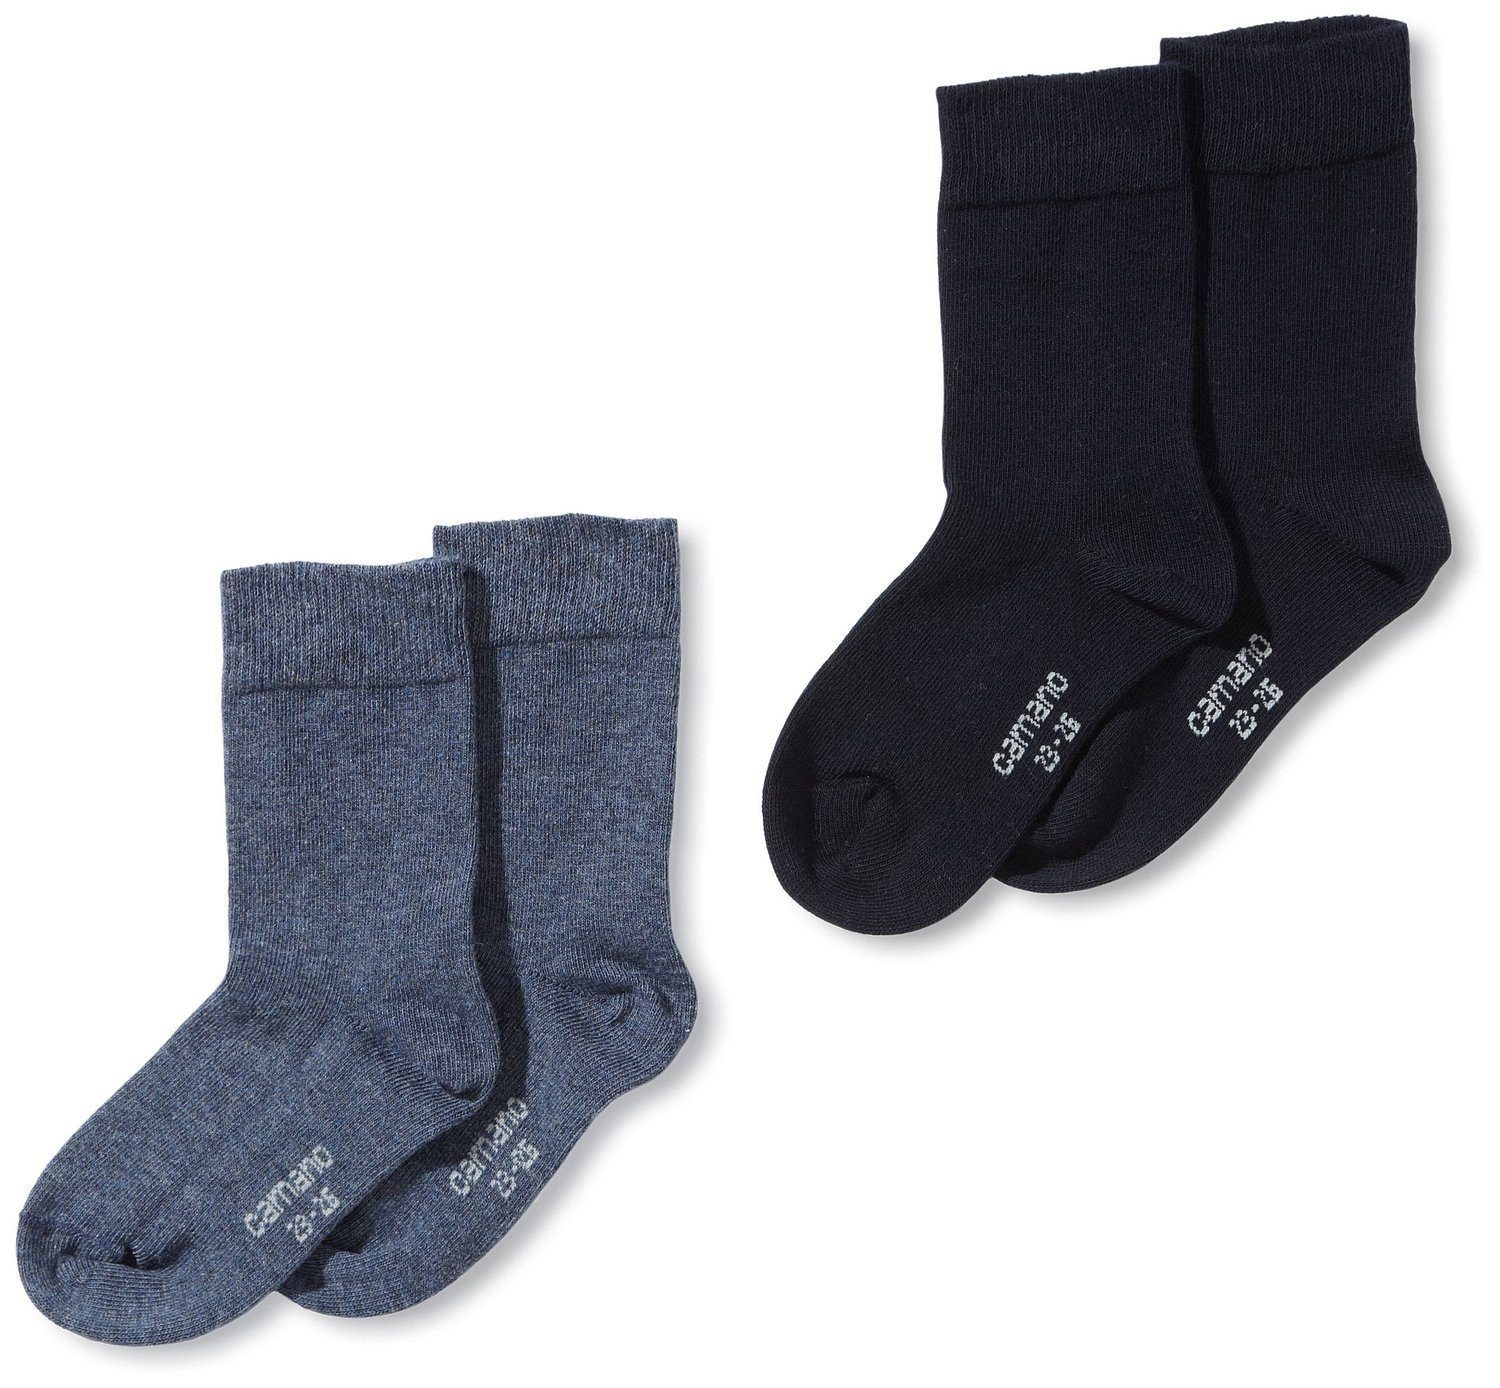 Wäsche/Bademode Socken Camano Langsocken CA3702 (Packung, 4-Paar, 4 Paar) Mädchen oder Jungen Socken Strümpfe, 2x2er Pack, Socke